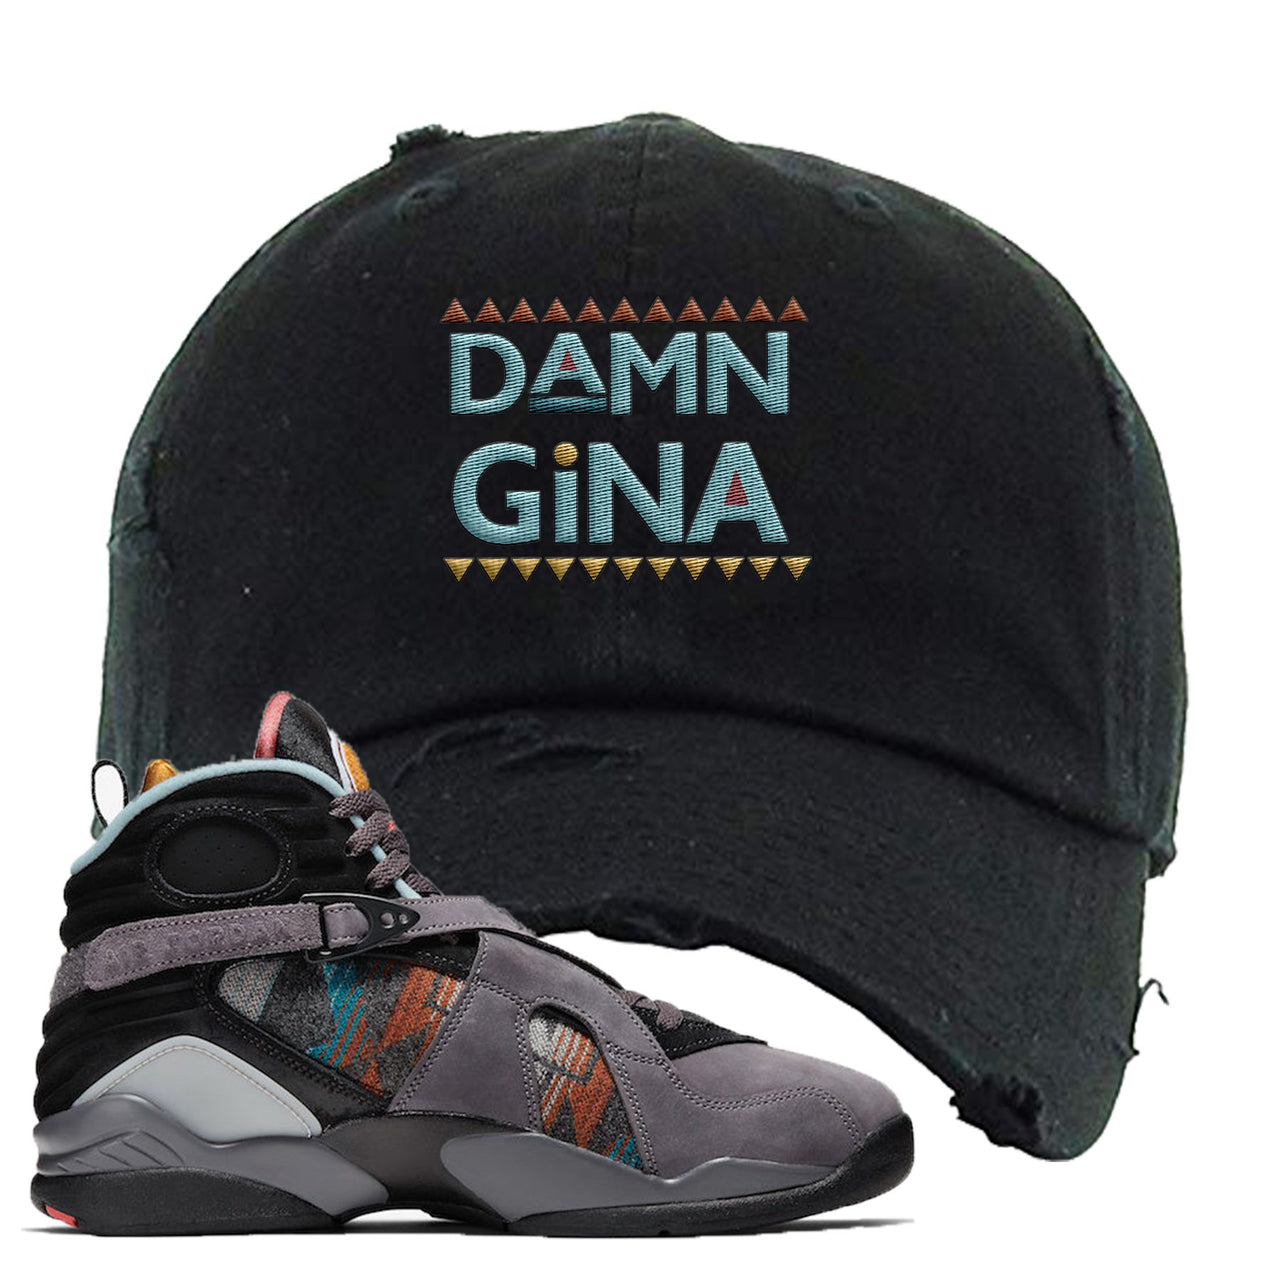 Jordan 8 N7 Pendleton Damn Gina Black Sneaker Hook Up Distressed Dad Hat